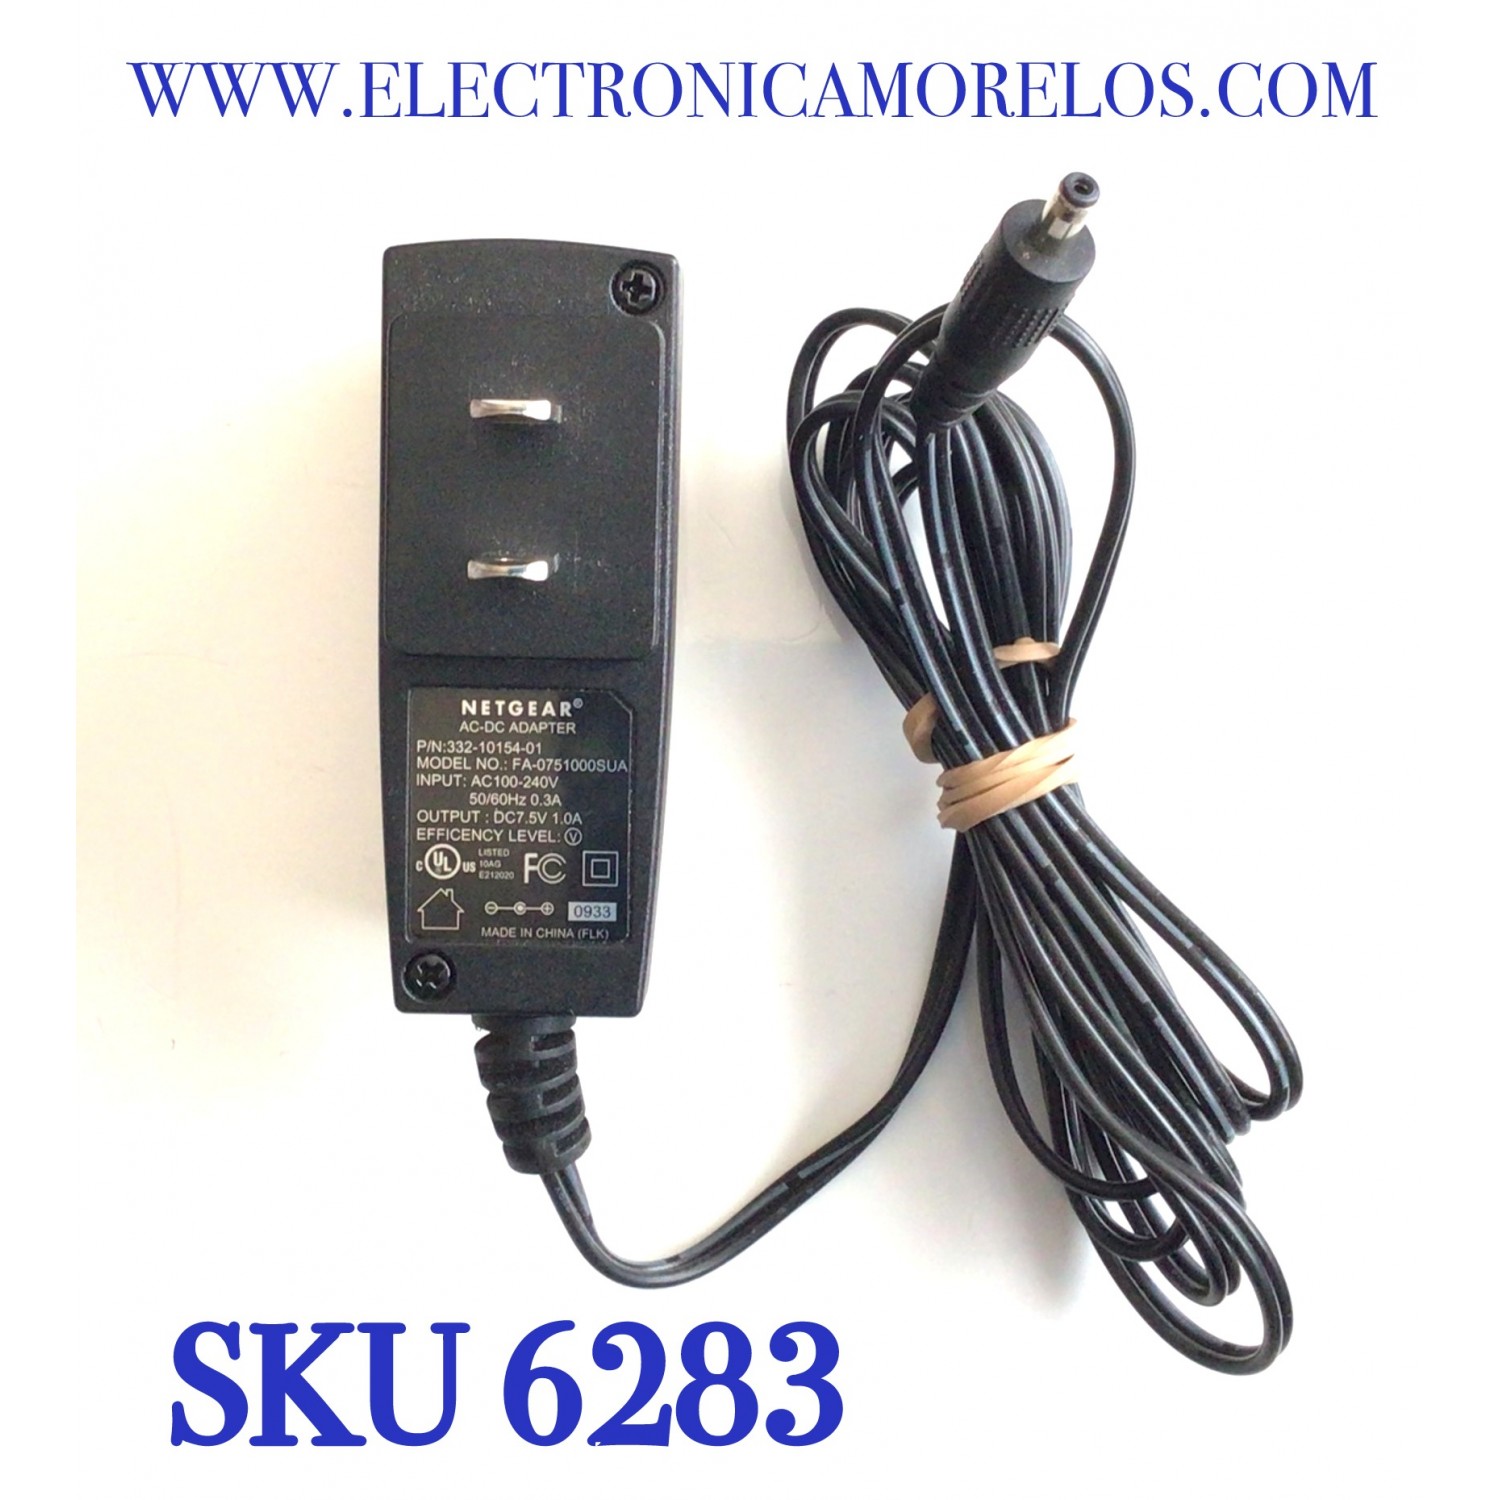 Adaptador de CA para cargador de fuente de alimentación CREATIVE ZEN MP3  USB 5V 1A SCP0501000P F7504